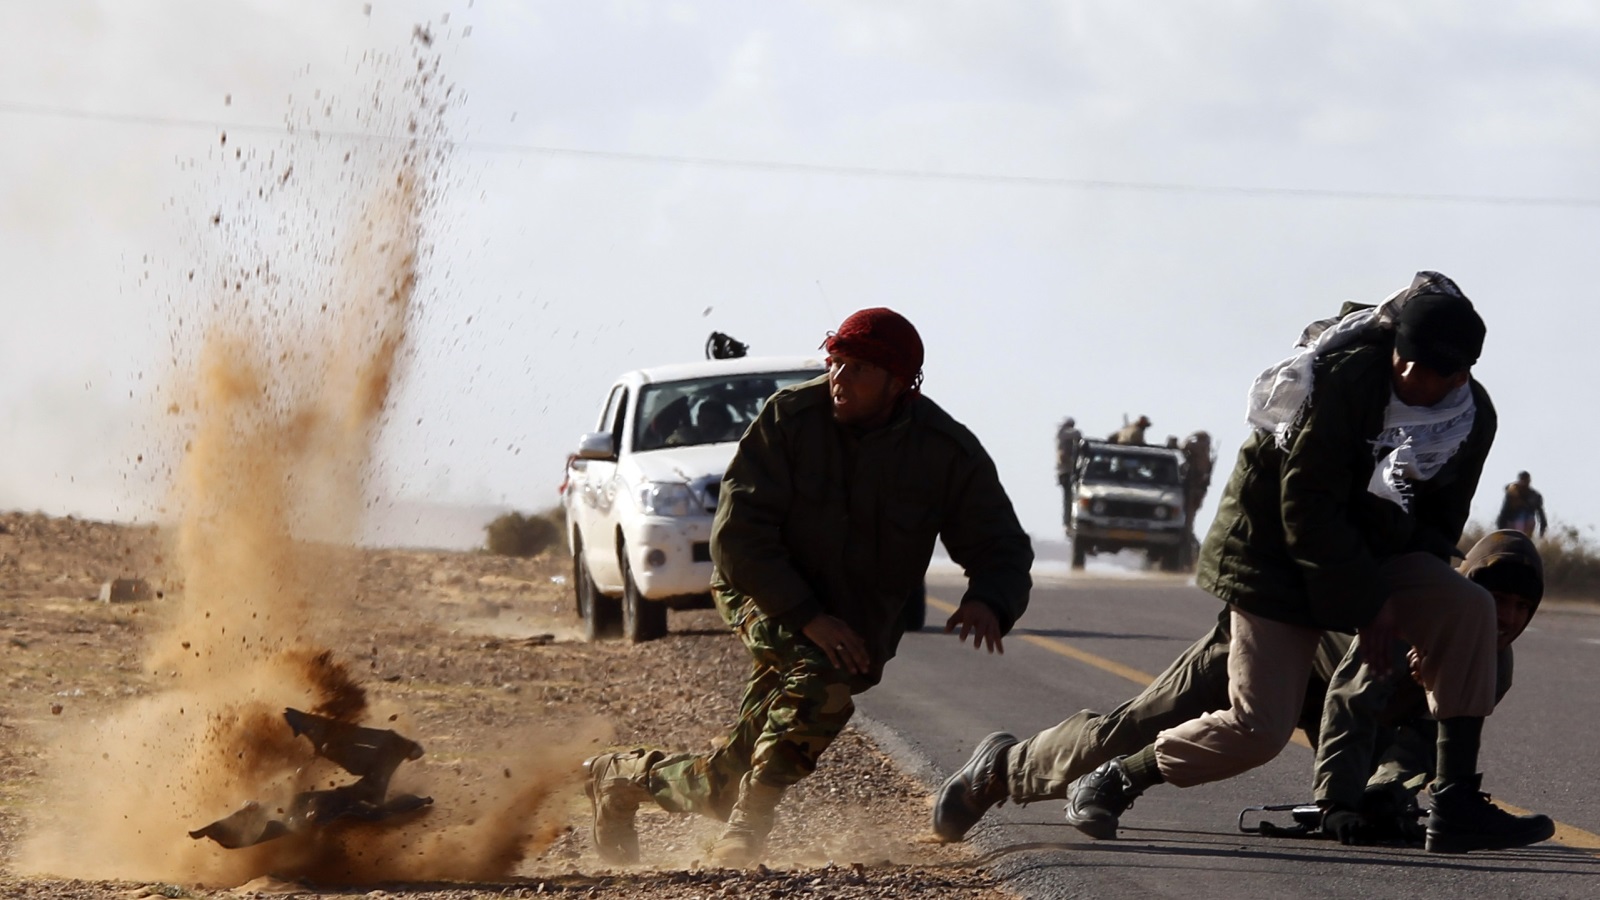 شن الجيش الوطني الليبي معركة ضد الجماعات الإسلامية في بنغازي، وحاصر جماعات أخرى مماثلة في درنة، واستولى مؤخرًا على أراضي كبيرة في وسط البلاد بالقرب من حقول النفط الليبية (رويترز)